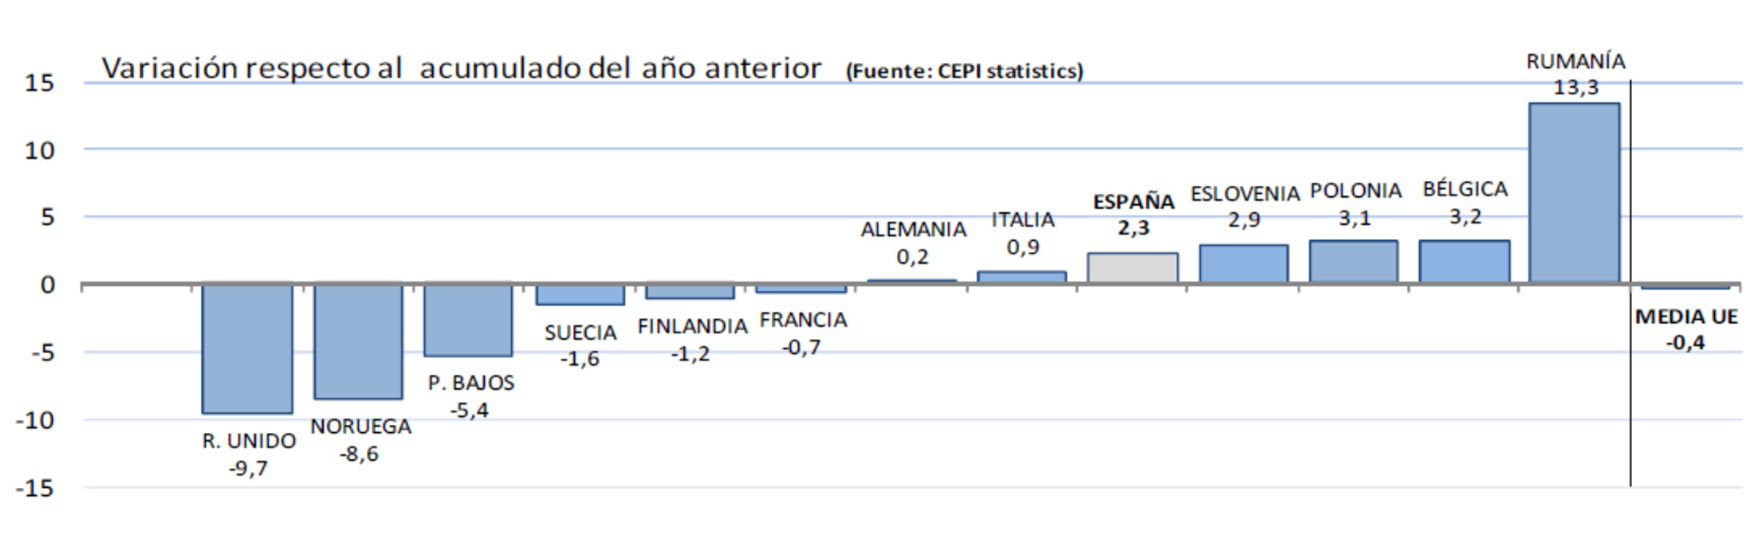 Produccin de papel en la UE. Enero-septiembre 2015. Fuente: CEPI Statistics